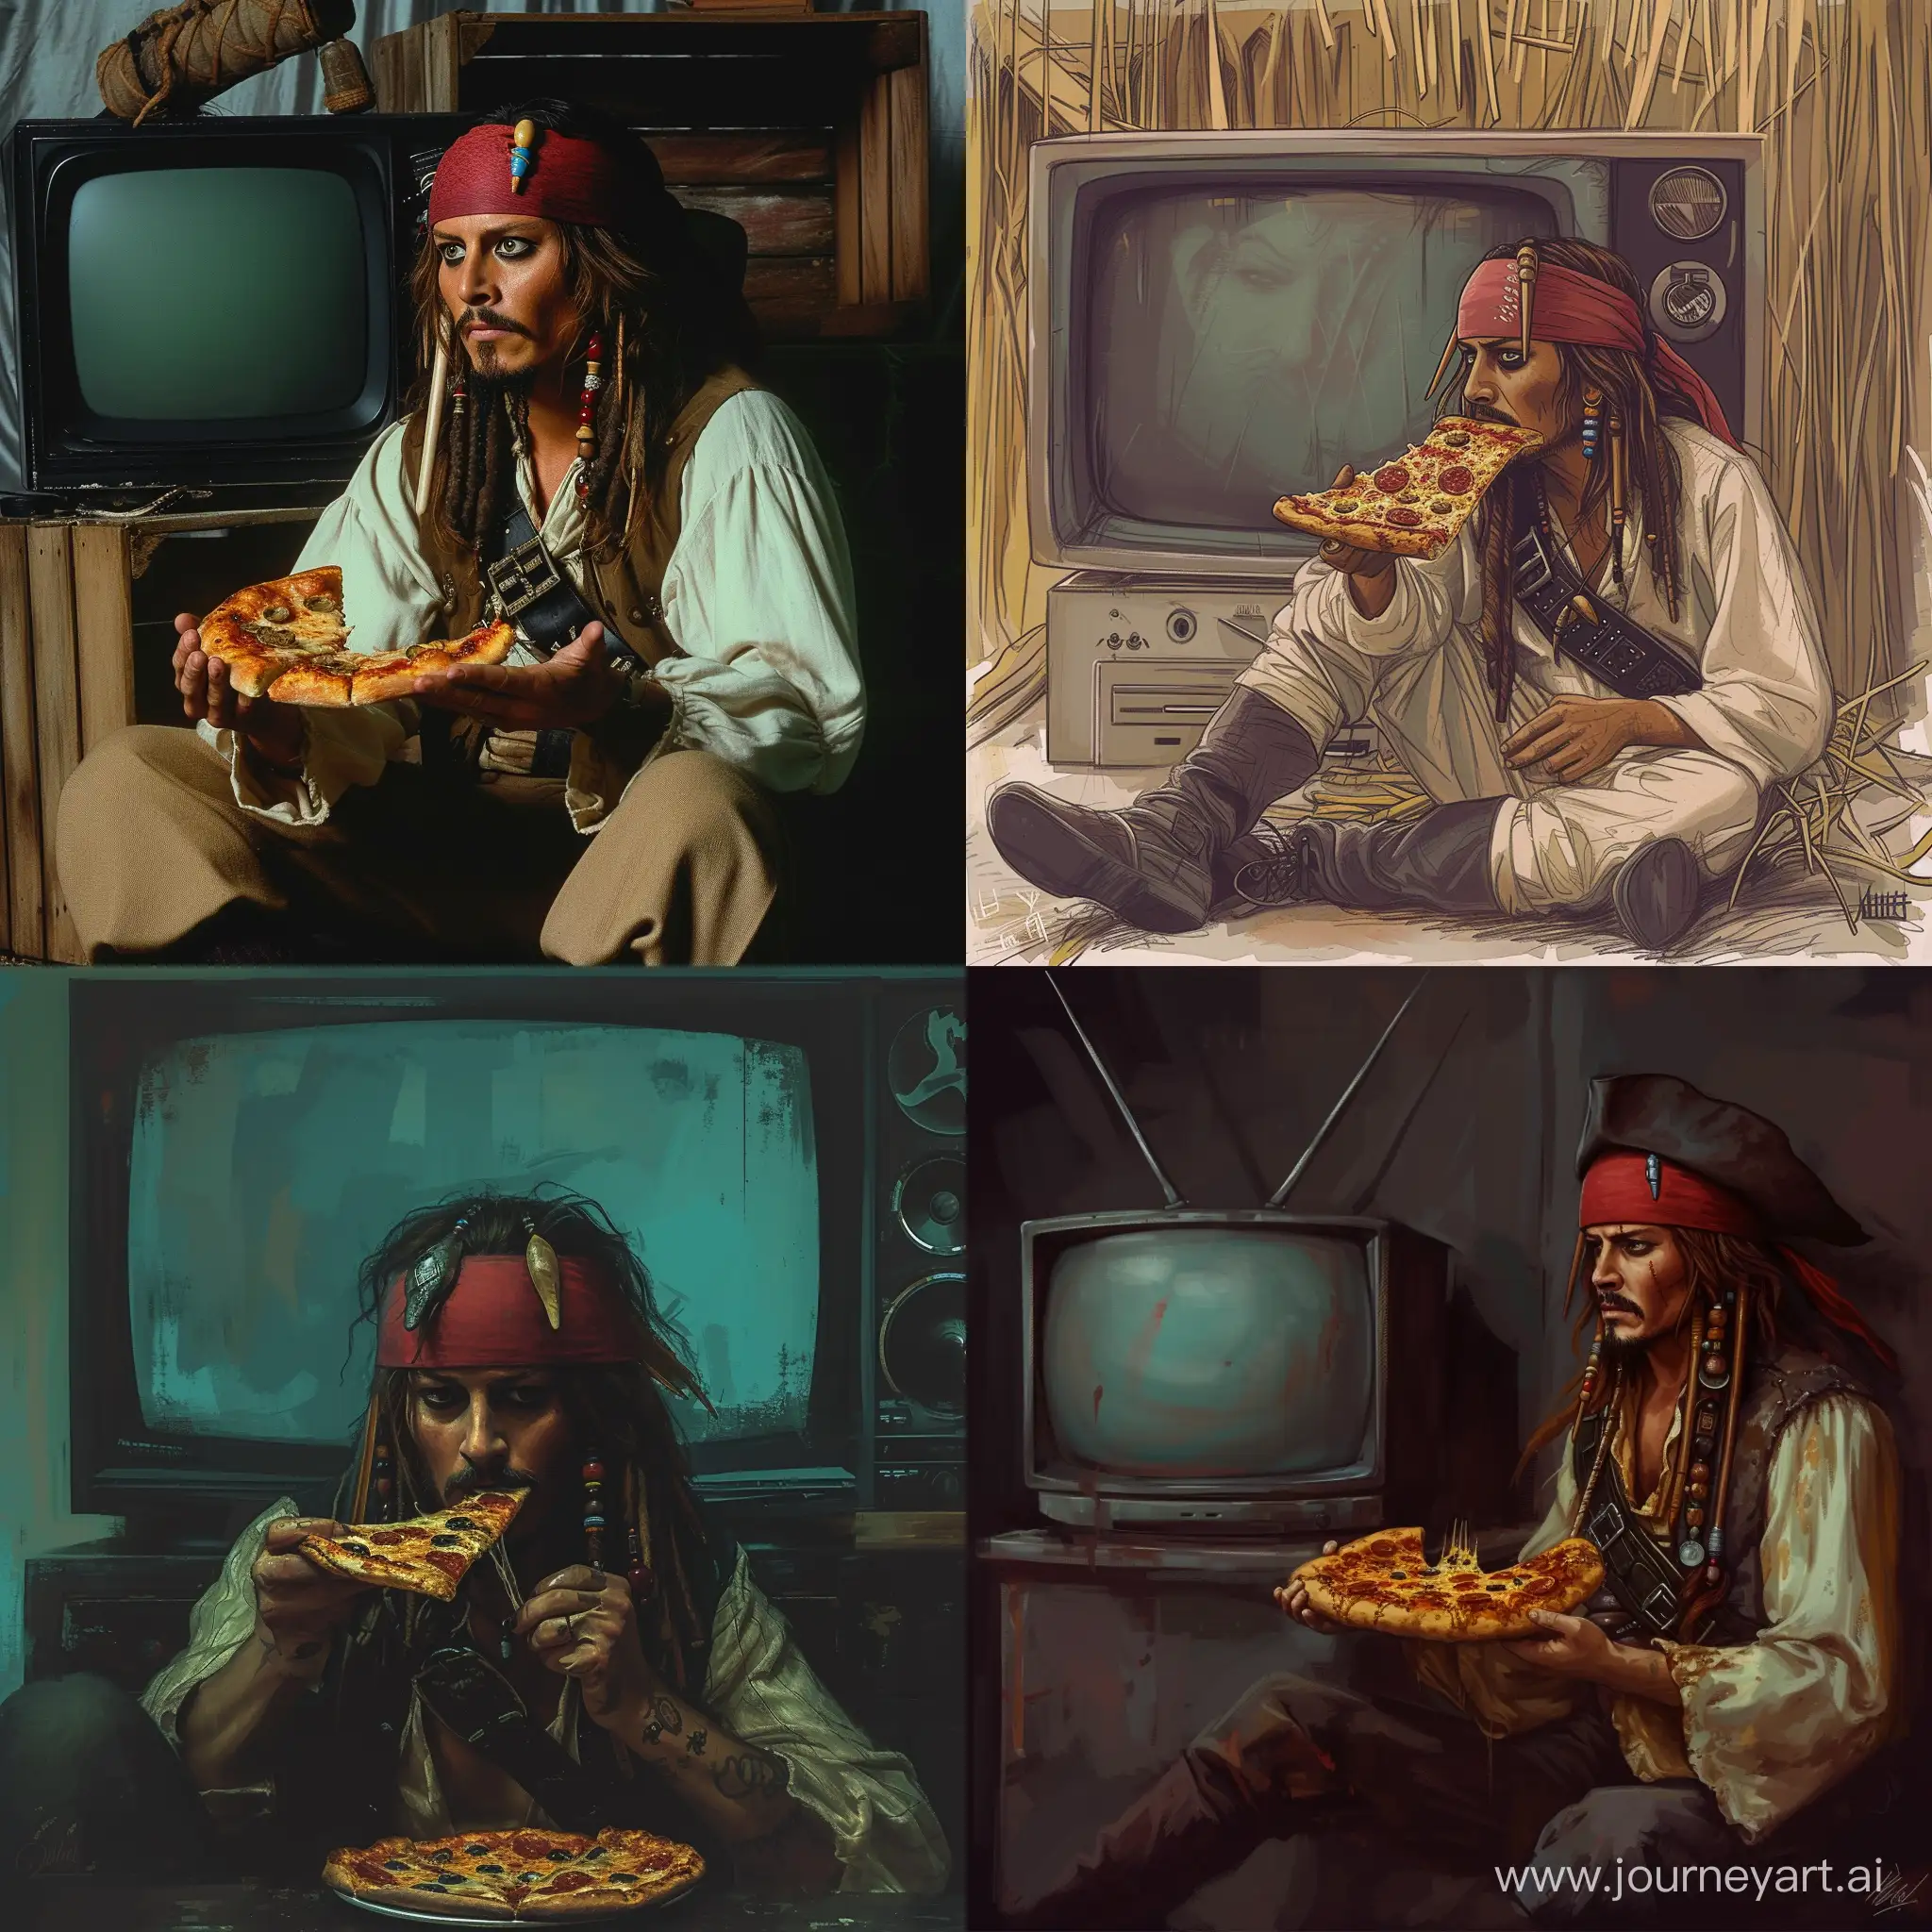 Джек воробей, сидит перед телевизором и ест пиццу 